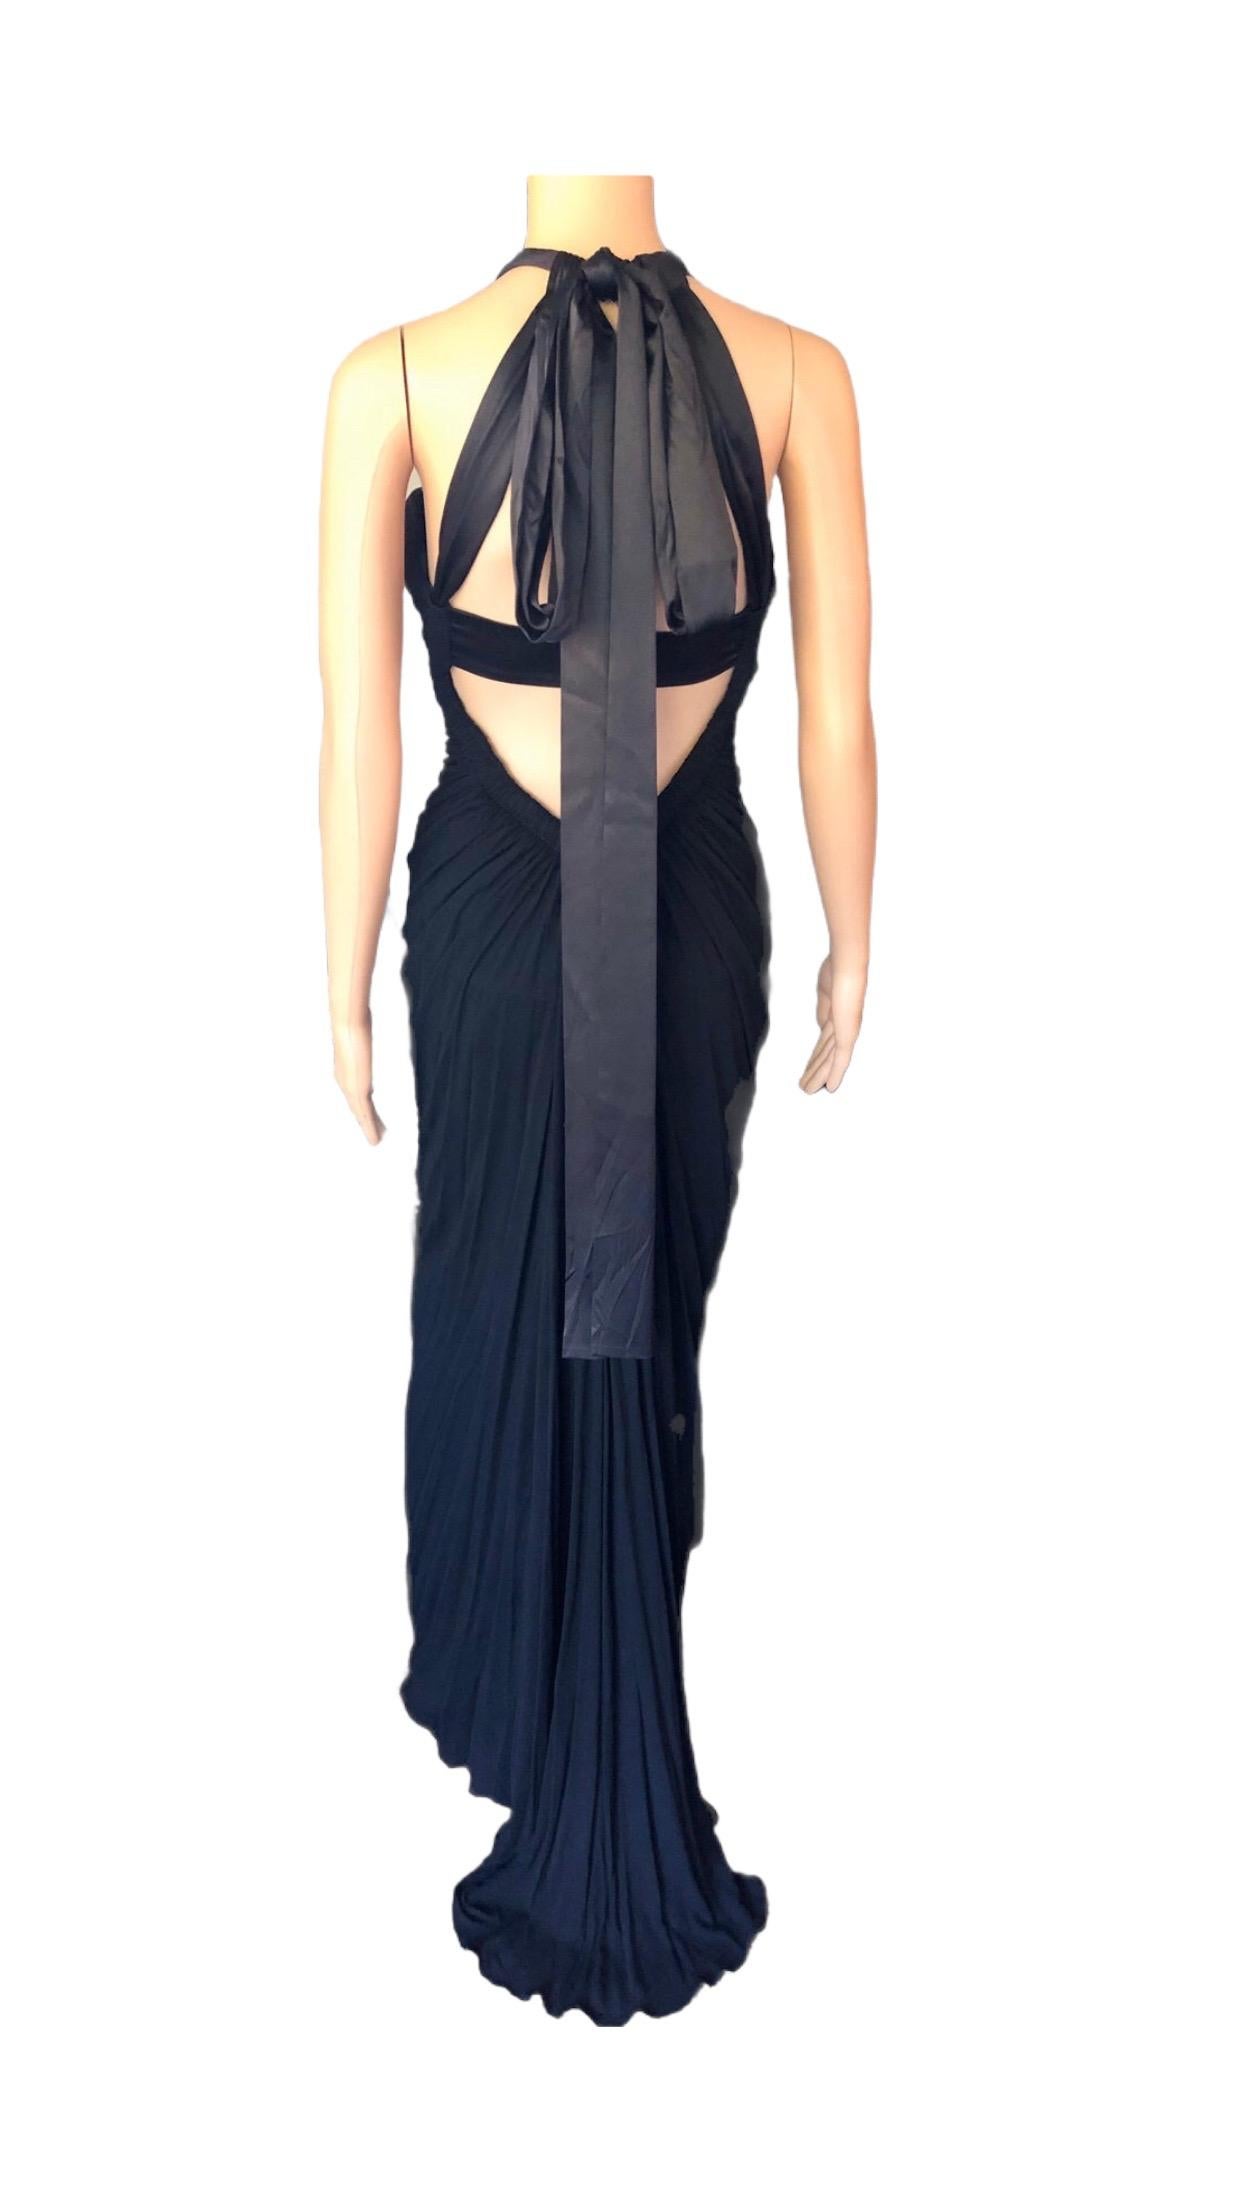 Dolce & Gabbana c.2000 Halter Cutout Open Back Black Evening Dress Gown 1